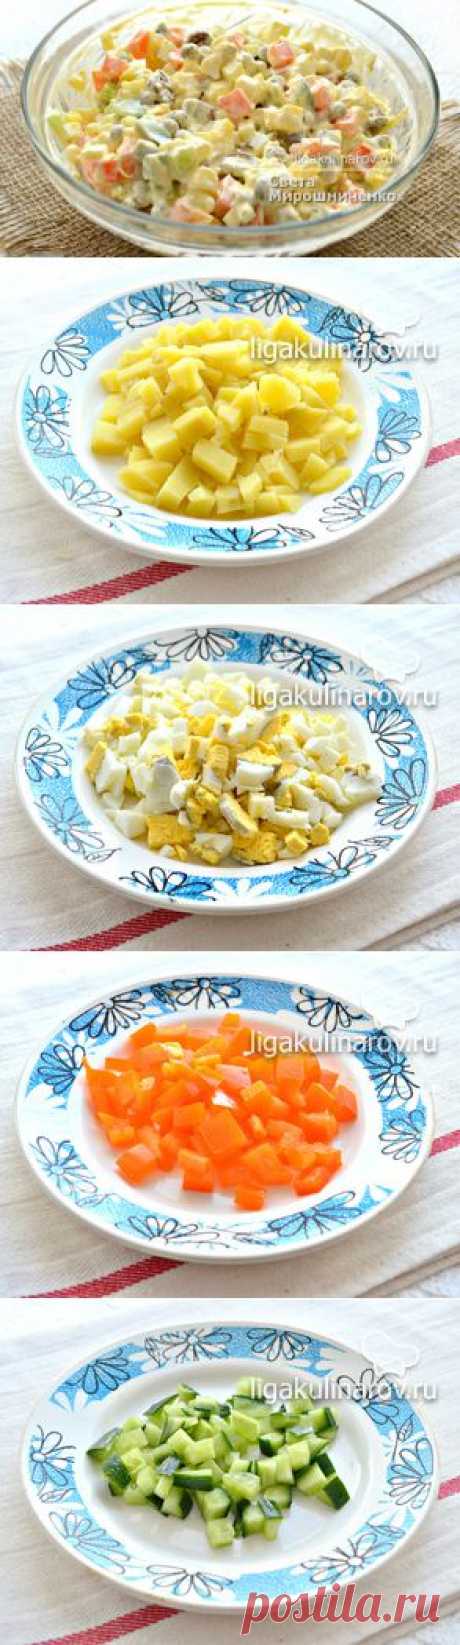 Овощной салат с яйцами и сухариками рецепт пошаговый с фото от Лиги Кулинаров. Рецепт овощного салата с сухариками